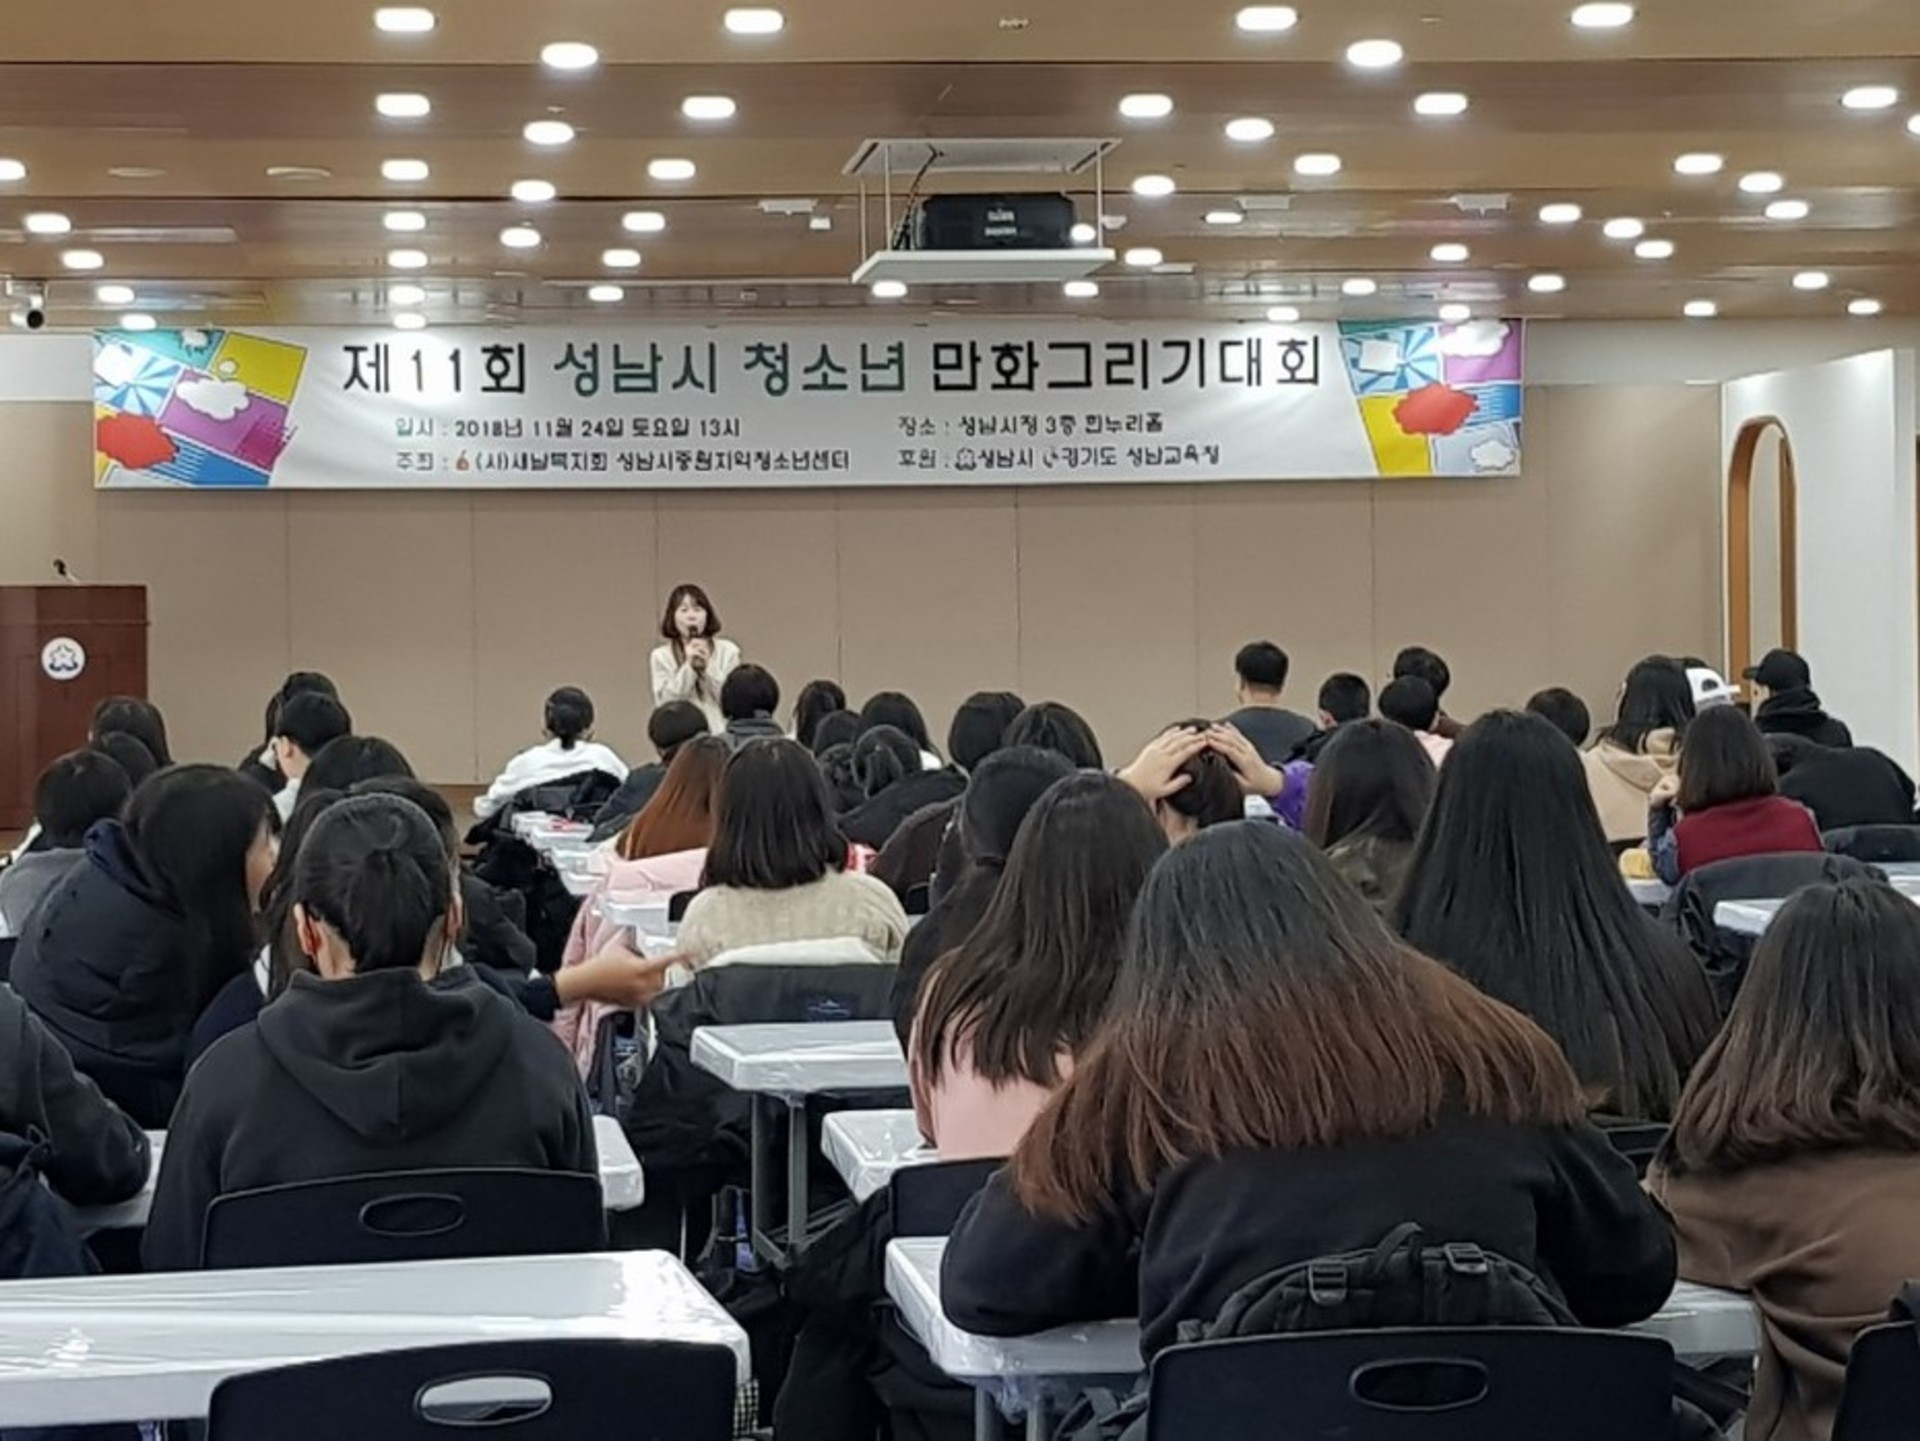 성남시중원지역청소년센터에서 주최한 제11회 청소년만화그리기대회가 2018년 11월 24일 토요일 13시 성남시청 3층 한누리홀에서 진행되었다. 